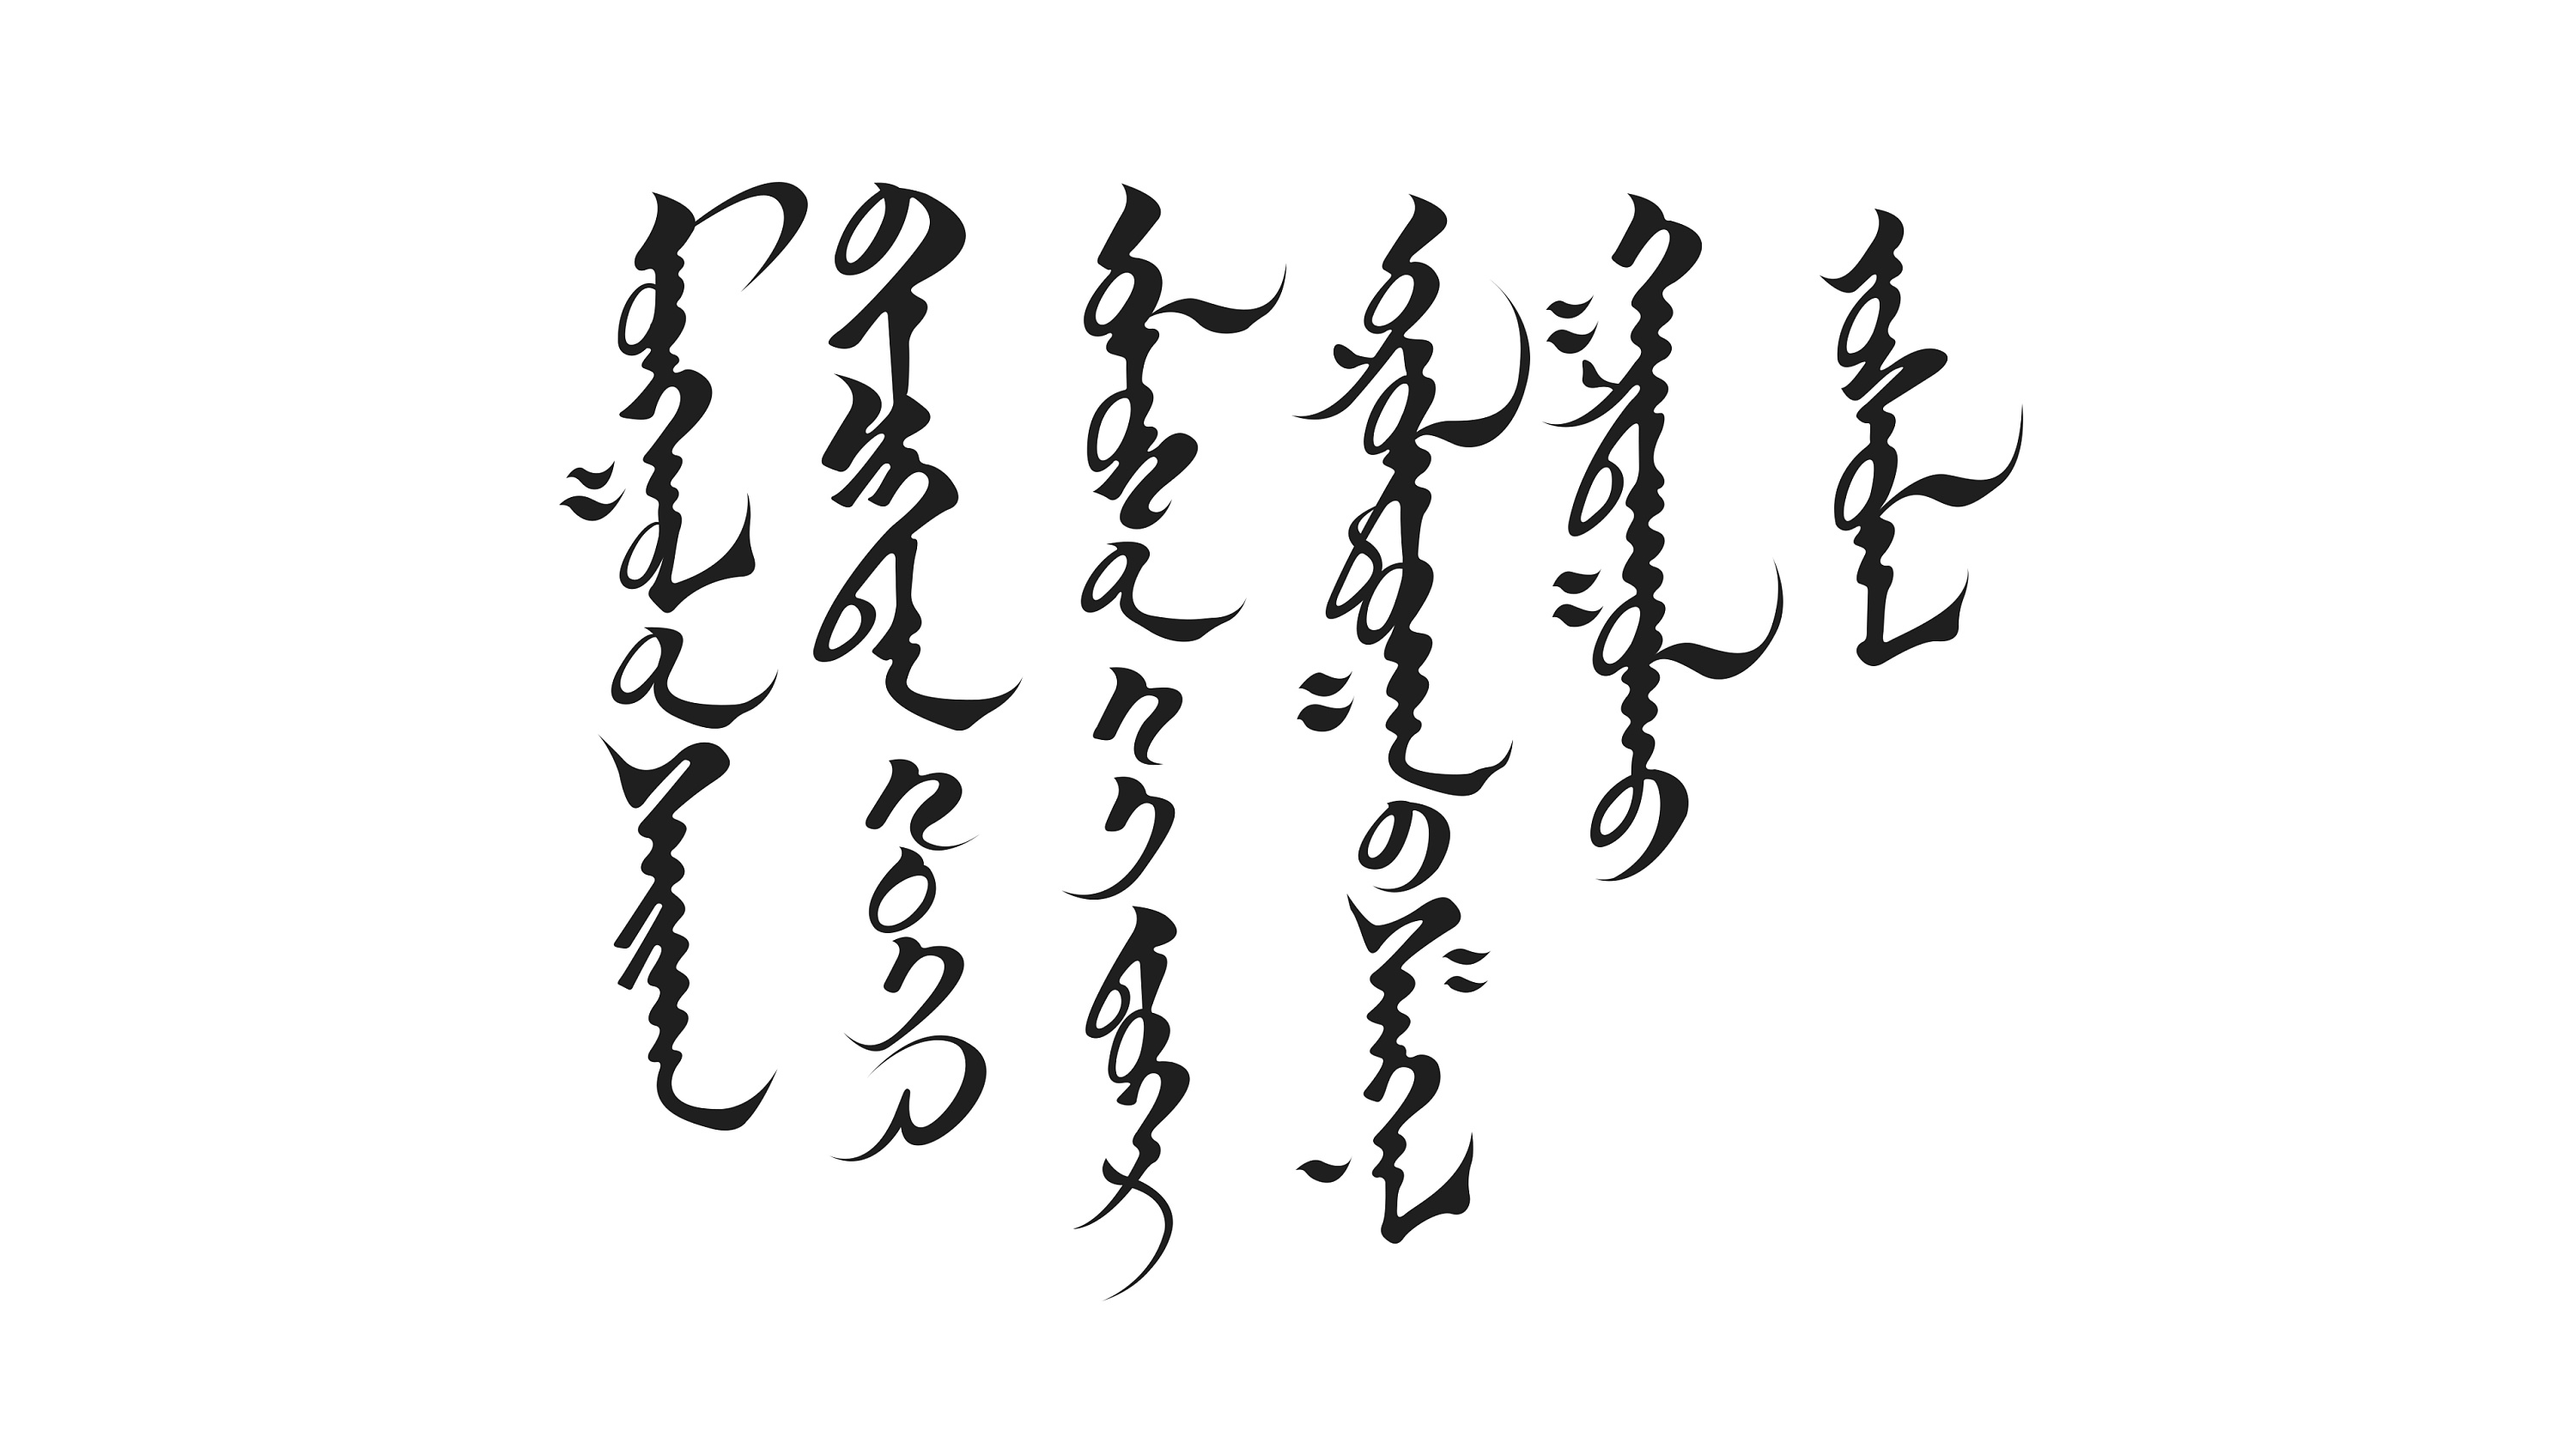 蒙古文字与汉字对照表图片